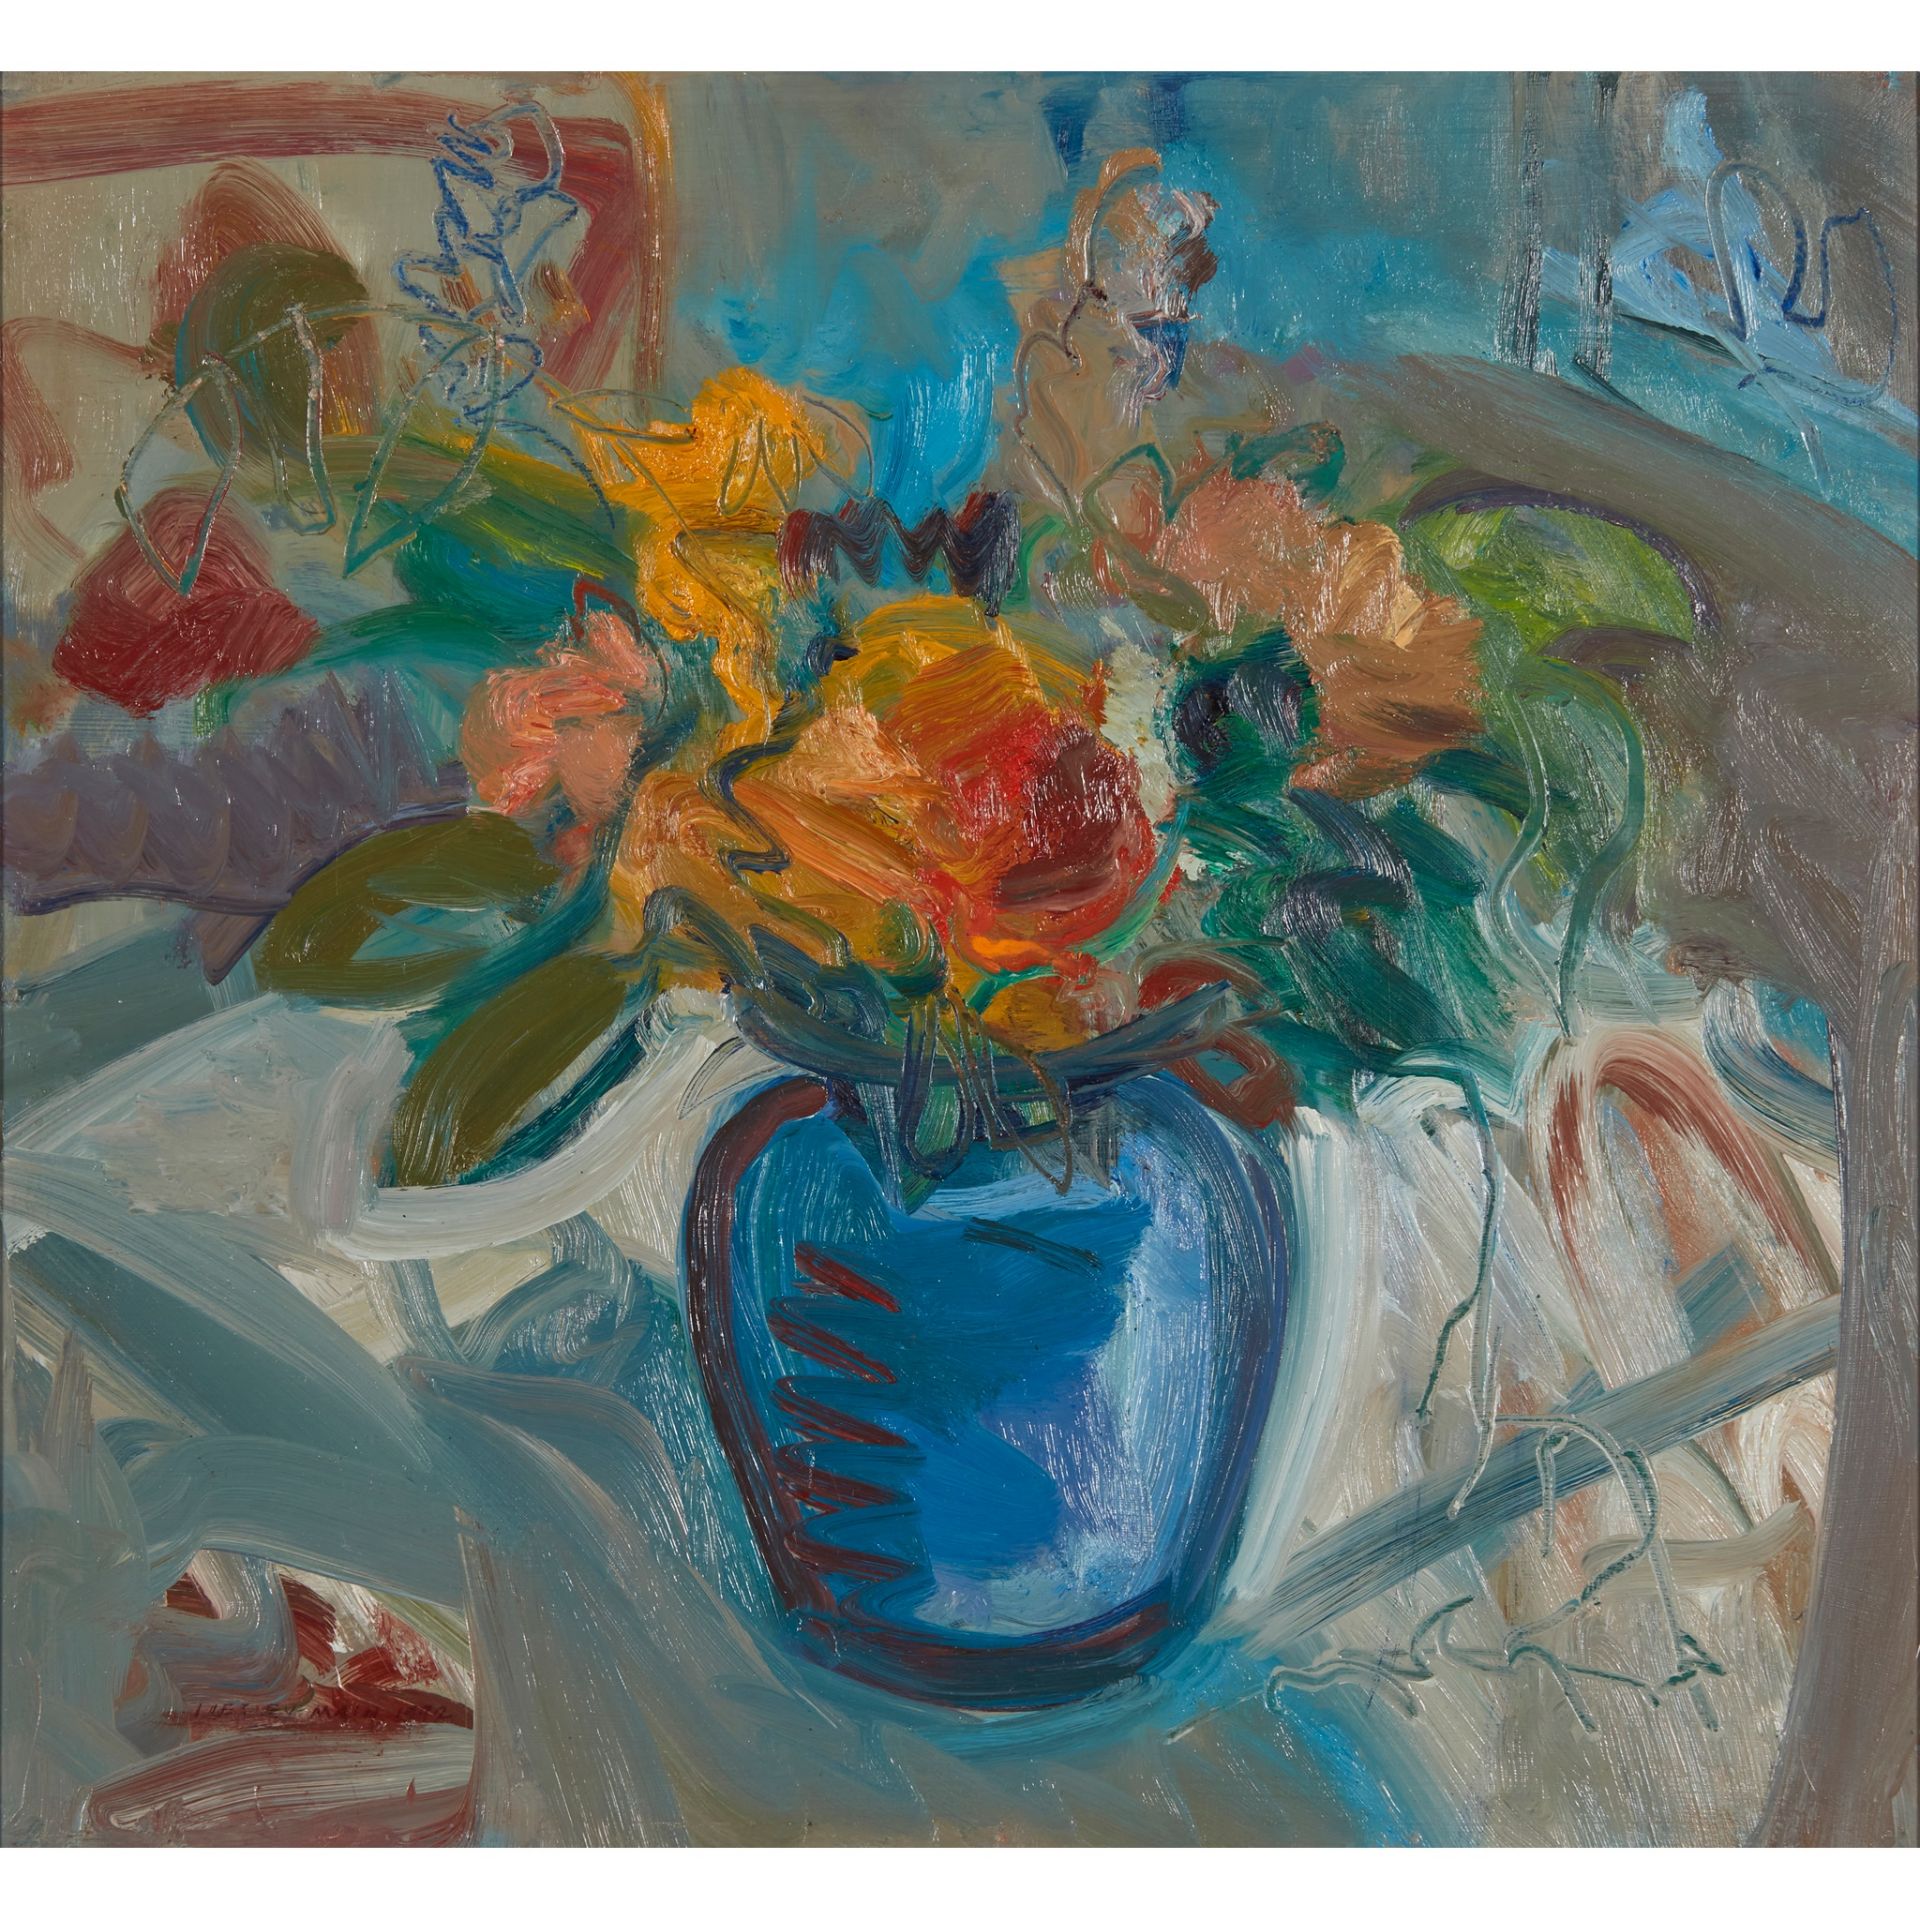 § LESLEY MAIN (SCOTTISH 1959-) FLOWERS (BLUE AND ORANGE)